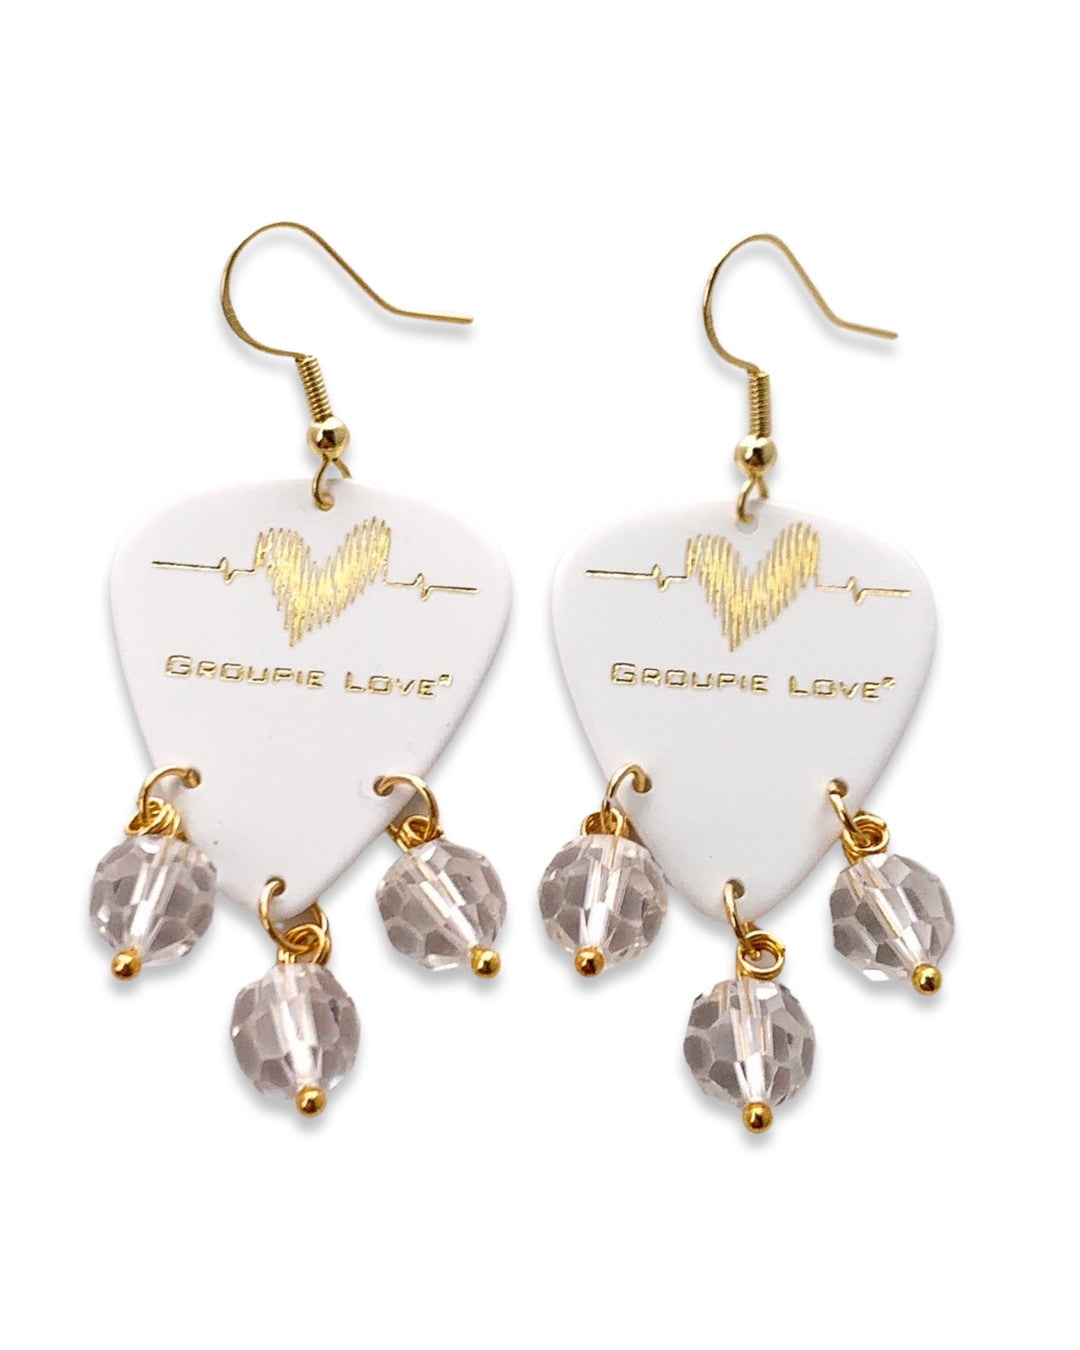 Groupie Love White Gold Quartz Crystal Guitar Pick Earrings